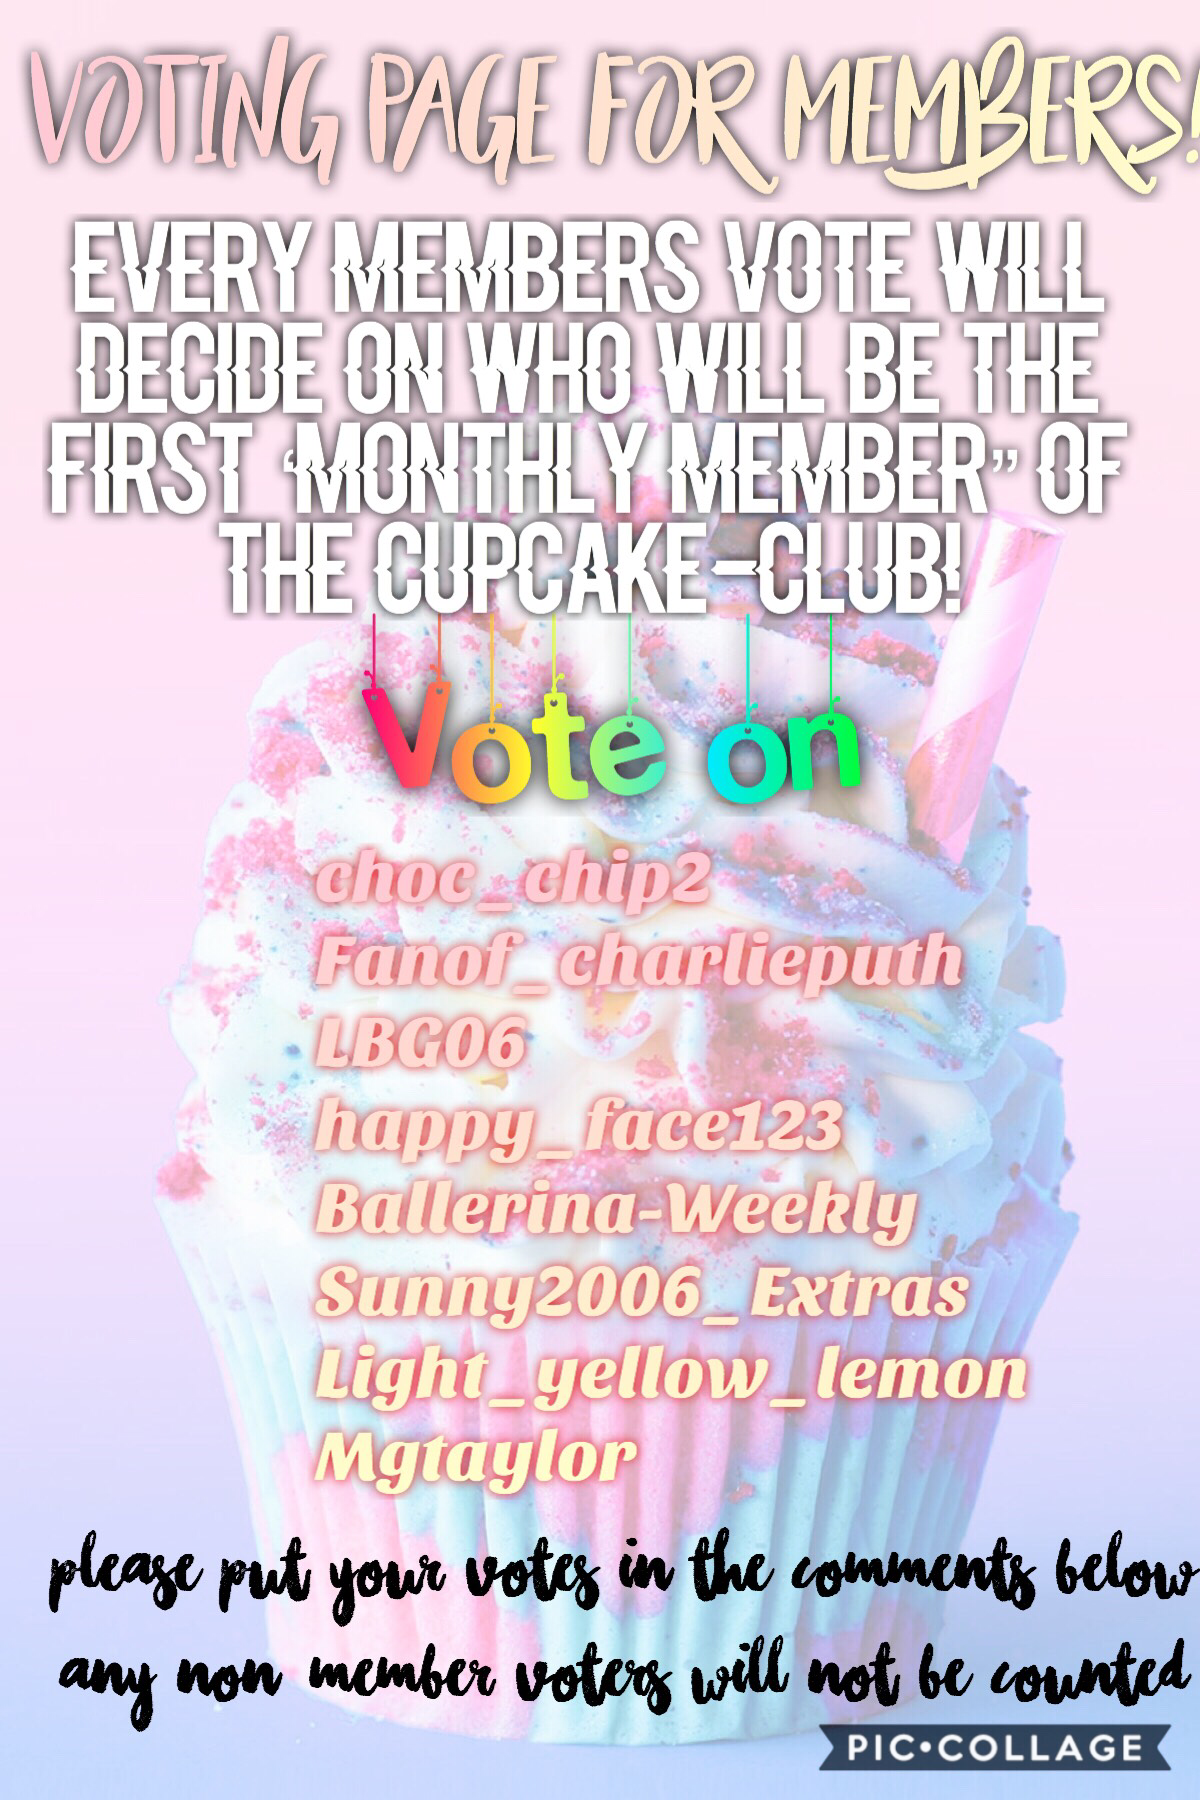 Voting page!! All members must vote before choosing a member!!